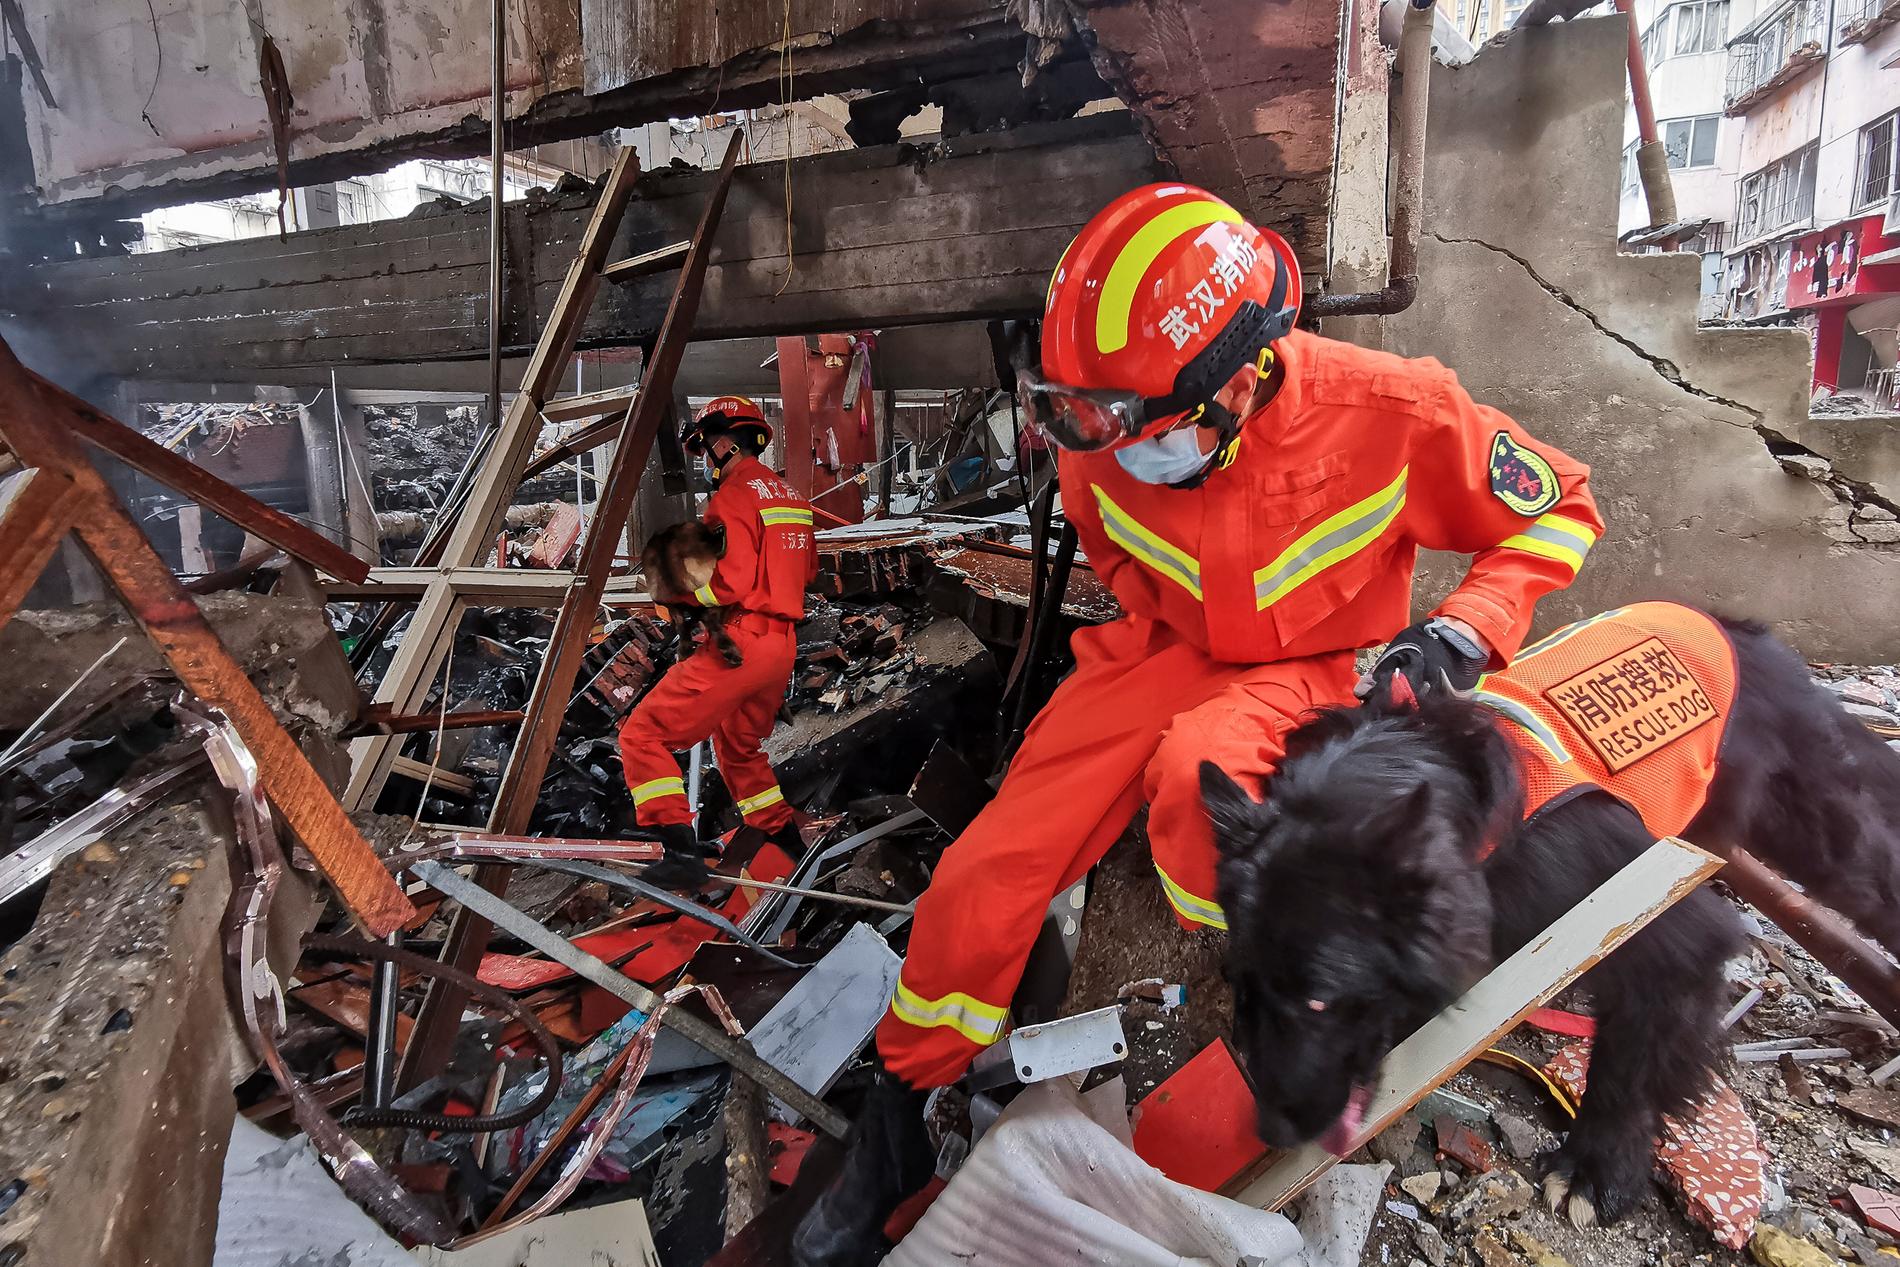 Räddningspersonal tog hjälp av hundar i sökandet efter överlevande efter explosionen.